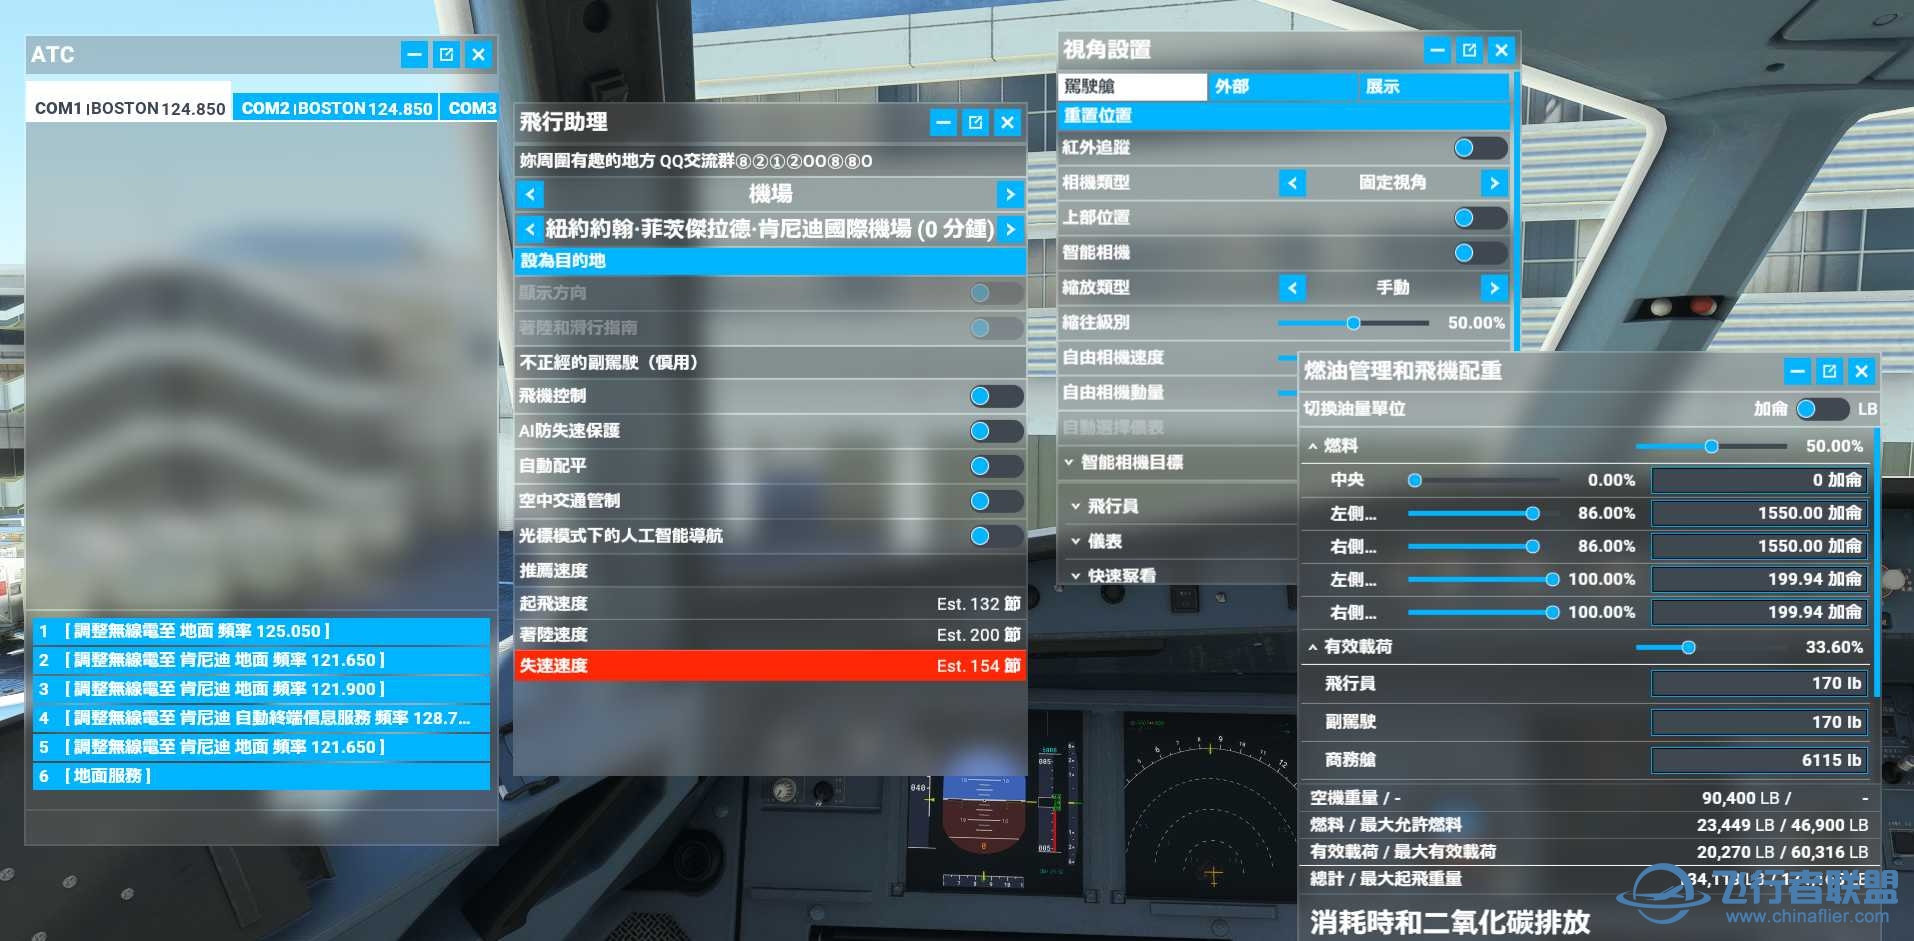 微软模拟飞行2020 1.18.14 繁体中文4.0发布版-3669 